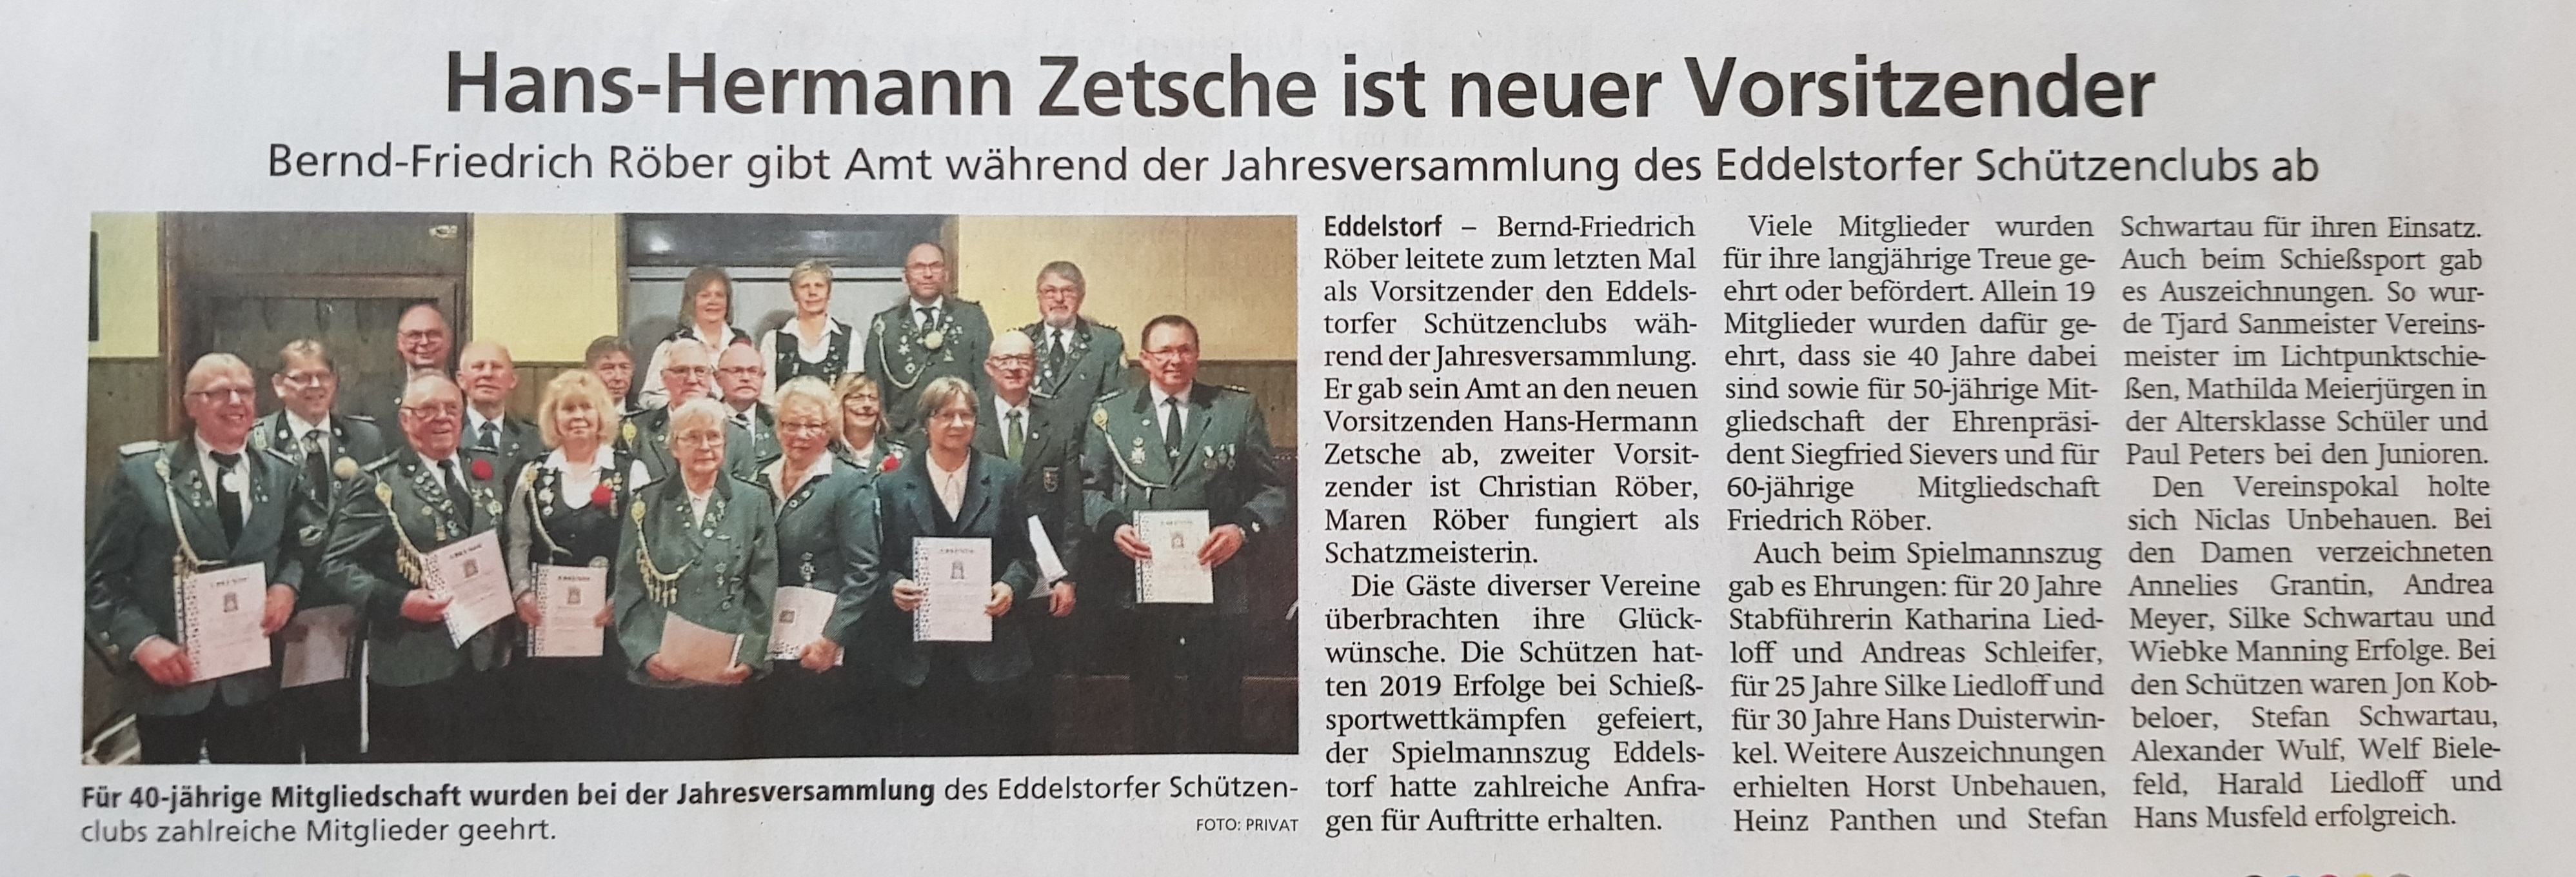 Hans-Herrmann Zetsche ist neuer Vorsitzender